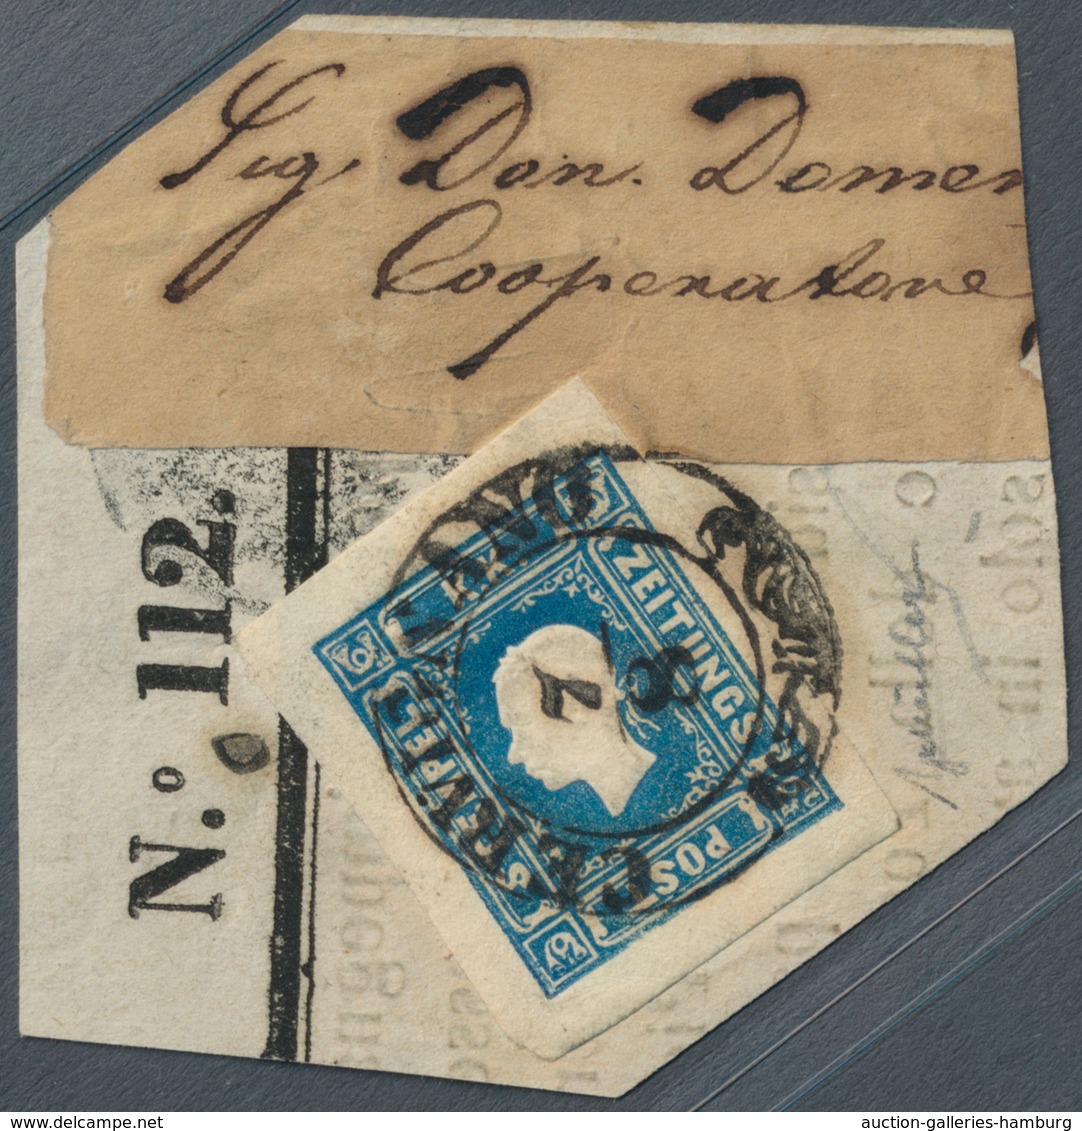 Österreich: 1858, (1,05 Kreuzer/Soldi) Dunkelblau Zeitungsmarke, Type I, Allseits überrandig, Farbin - Ungebraucht